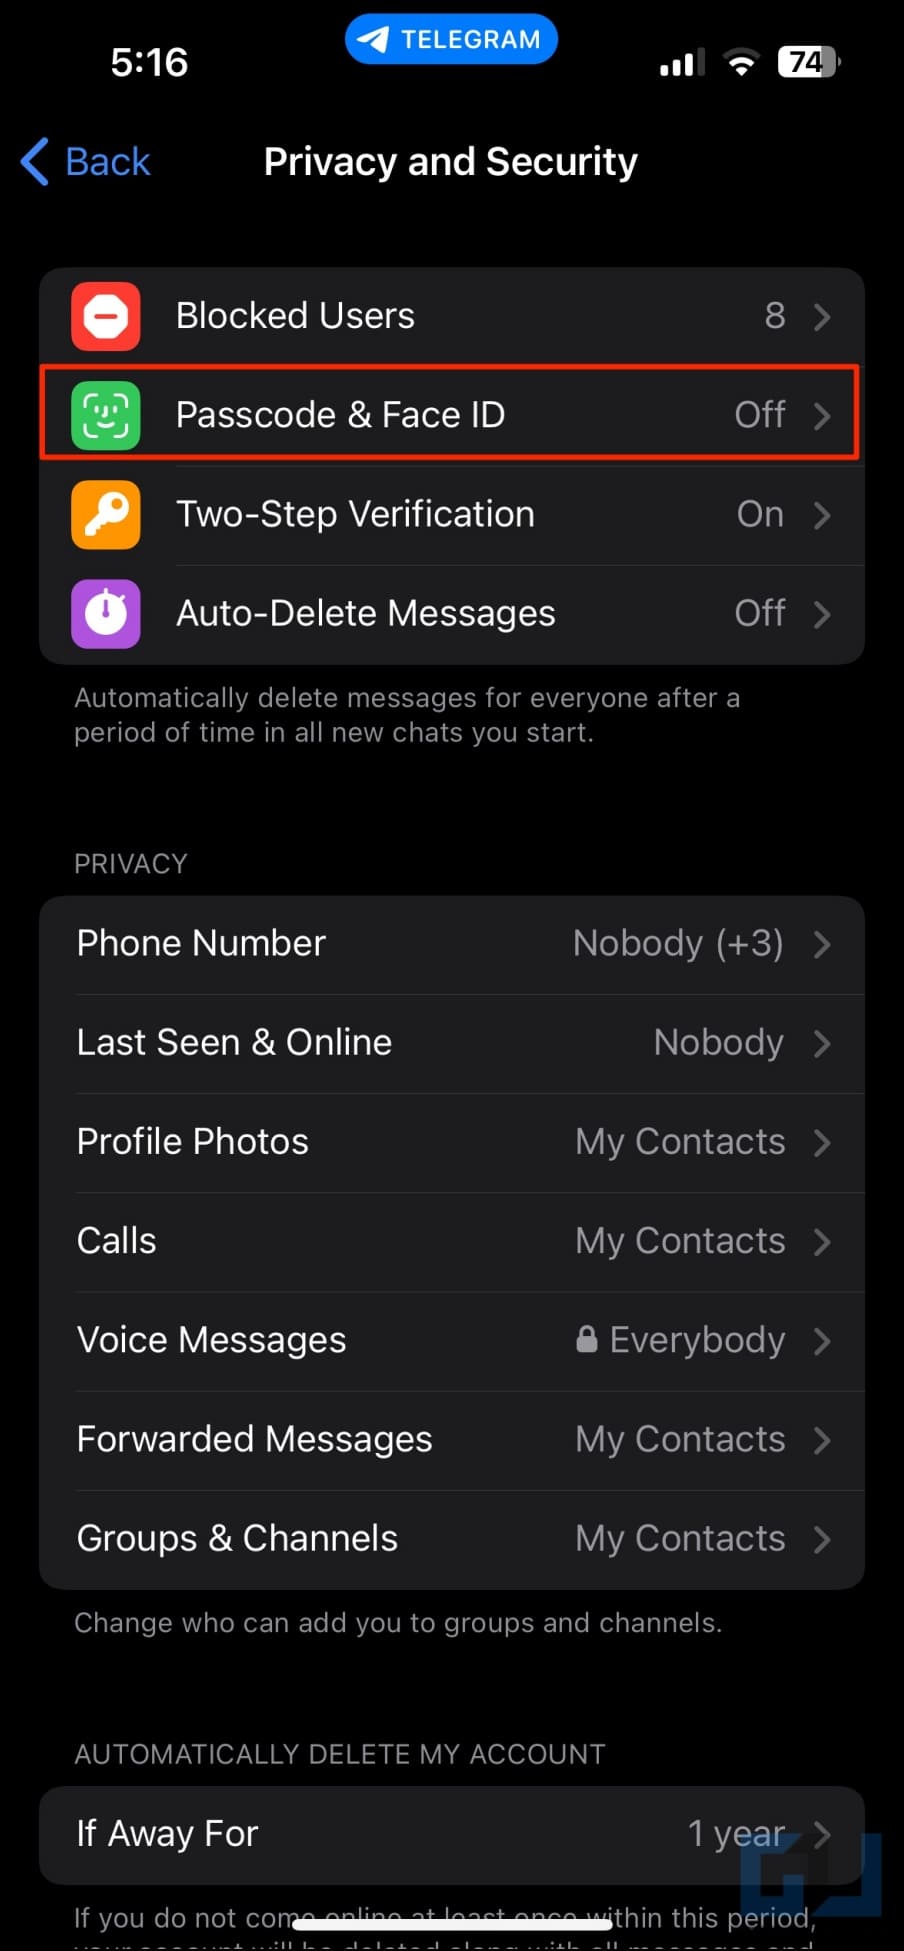 Lock Telegram App on iPhone